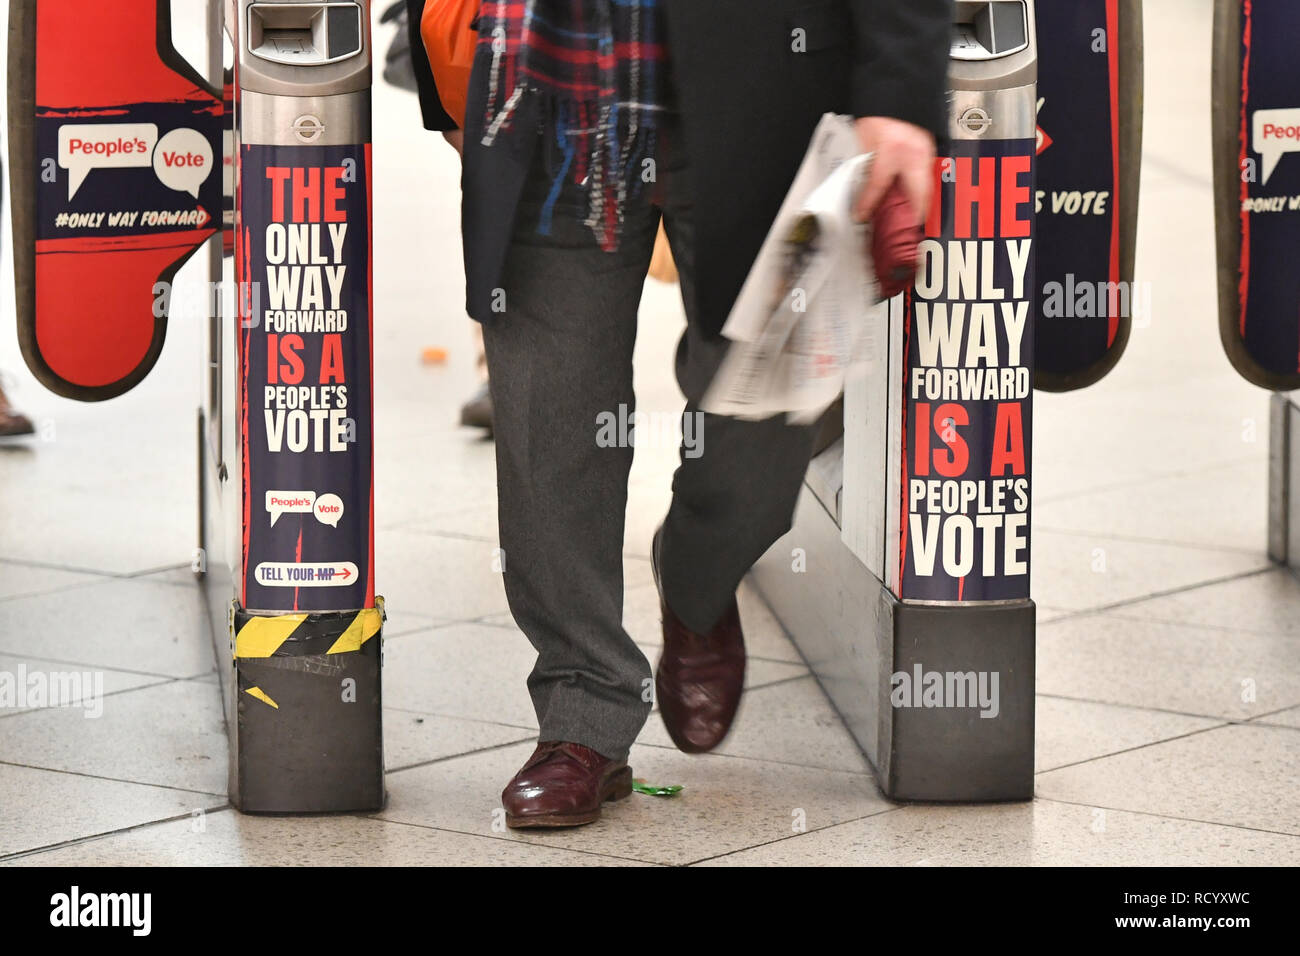 Le billet à la station de métro Westminster obstacles à Londres avec des publicités pour la campagne de vote, qui demande la création d'un second référendum sur l'adhésion à l'Union européenne. Banque D'Images